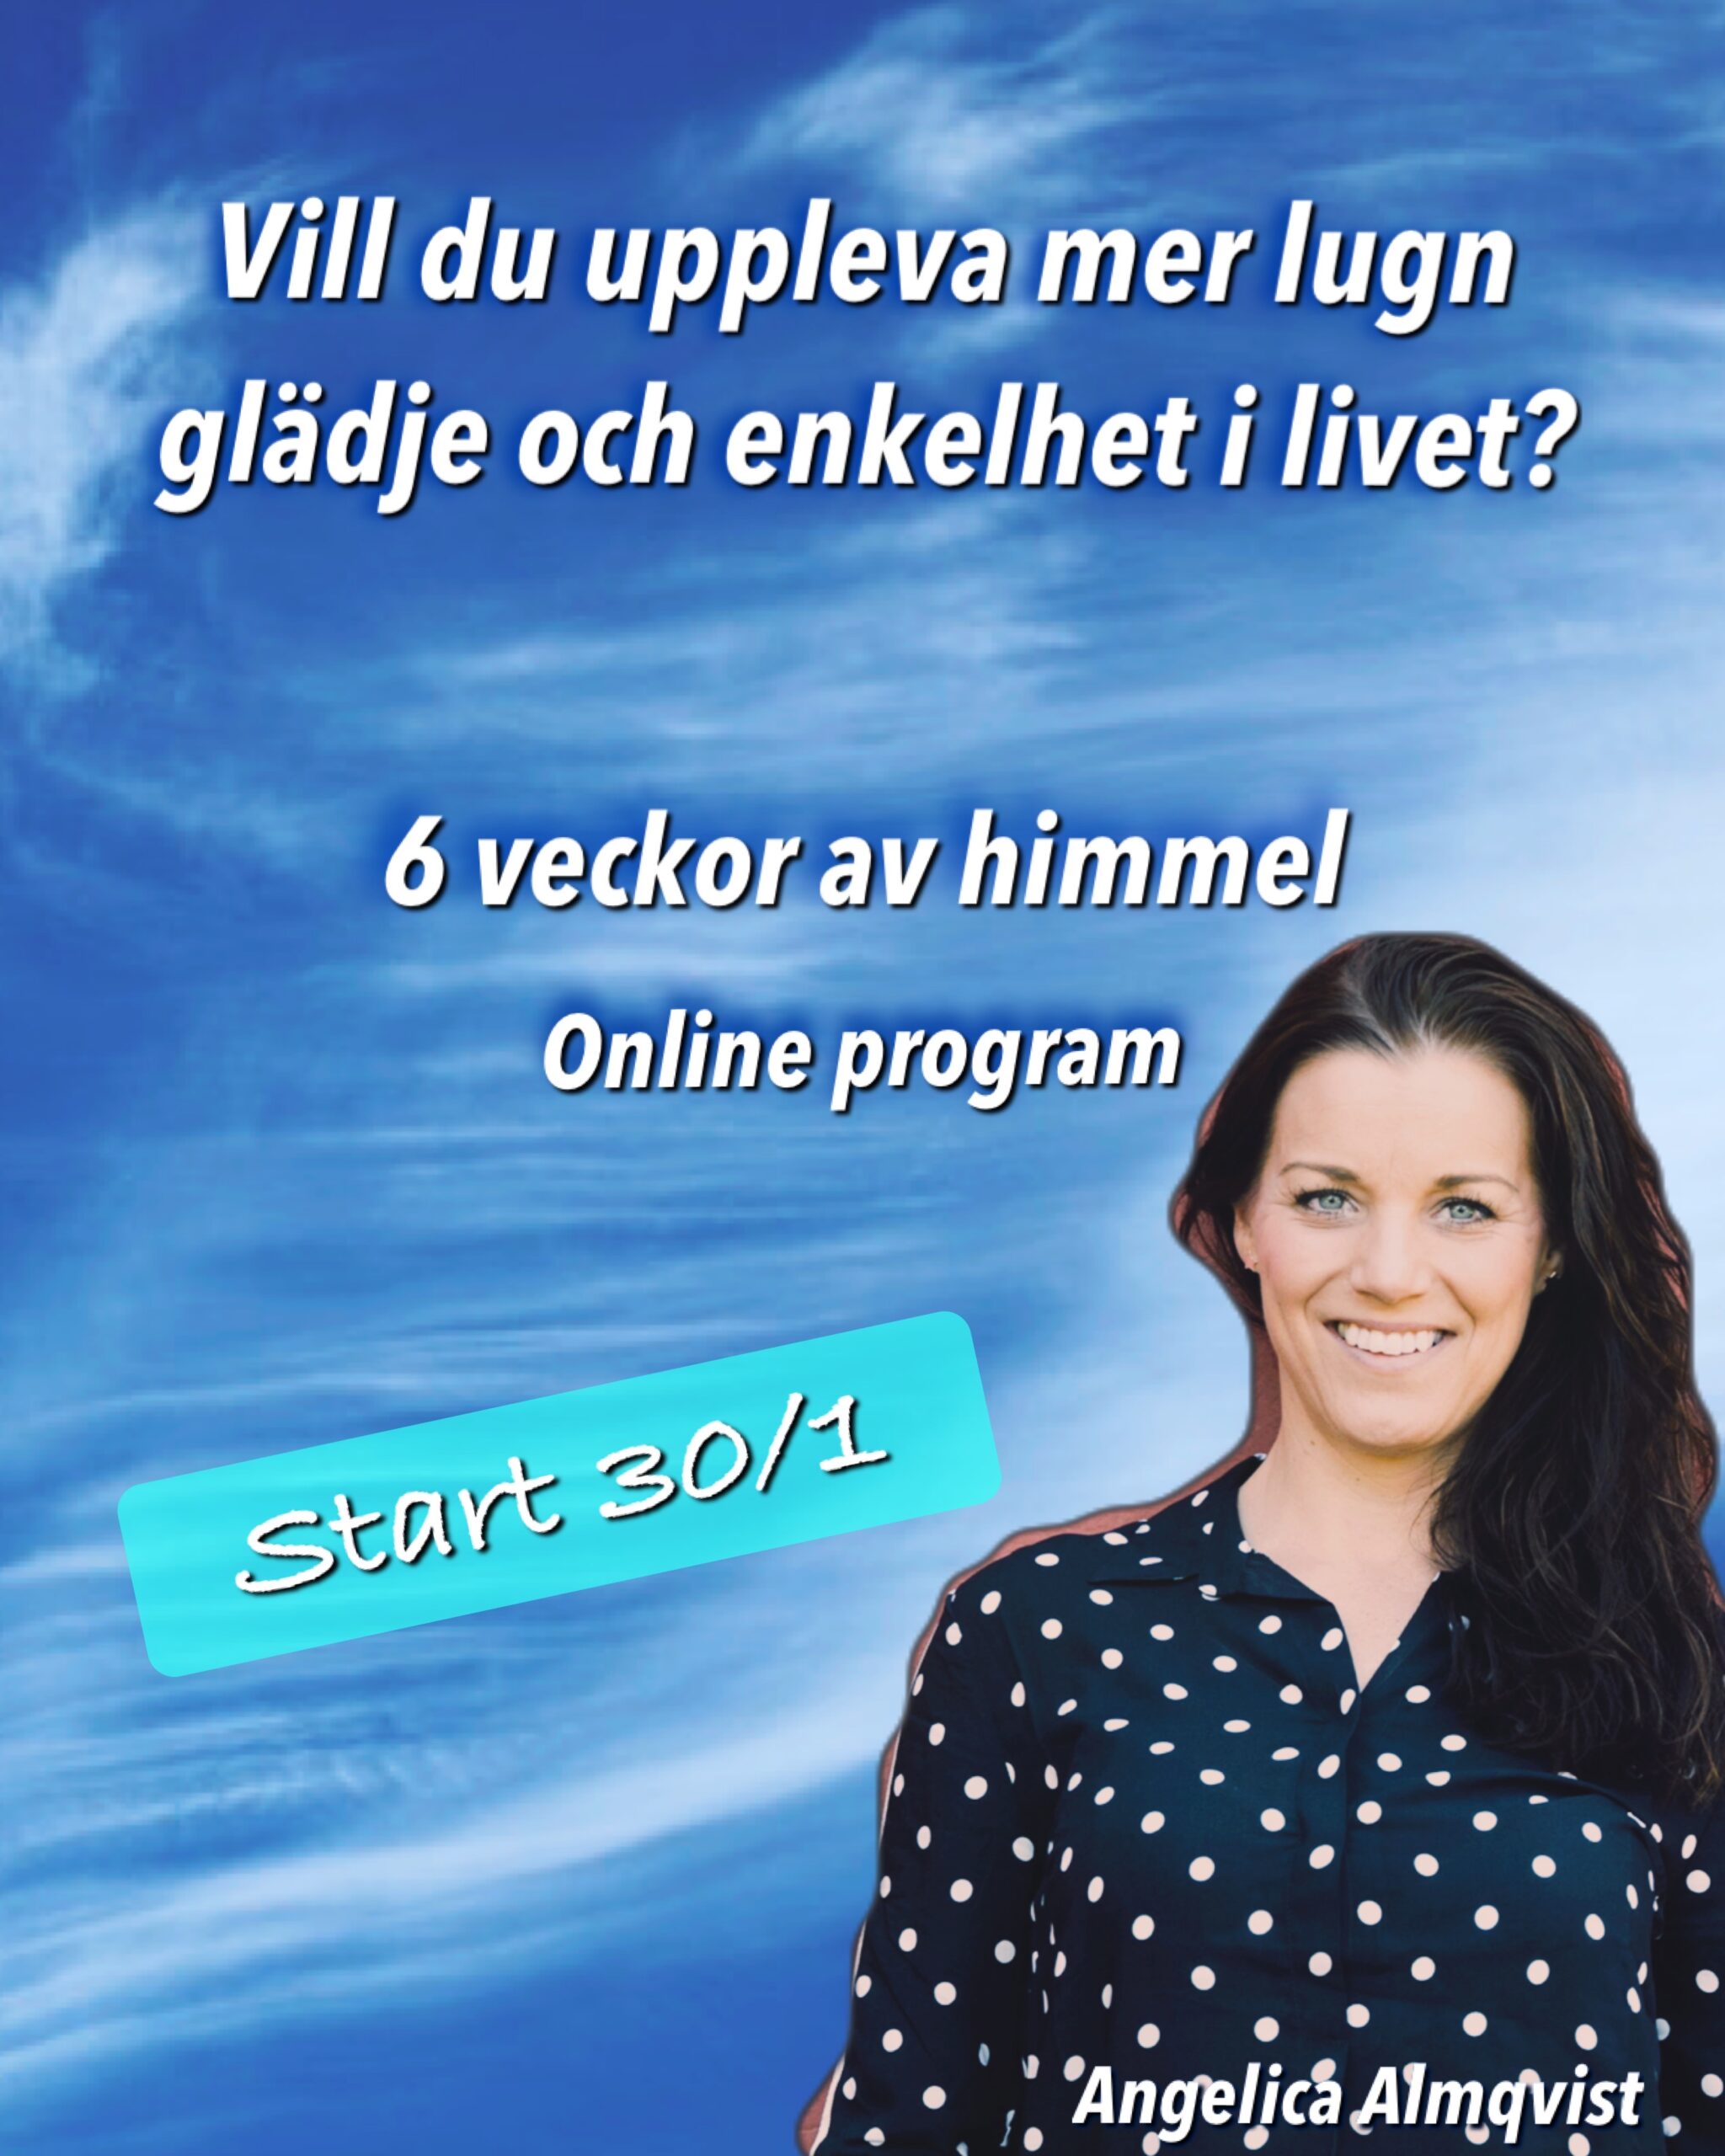 bild på himmel och Angelica Almqvist samt texten: vill du uppleva mer lugn, glädje och enkeklhet i livet?